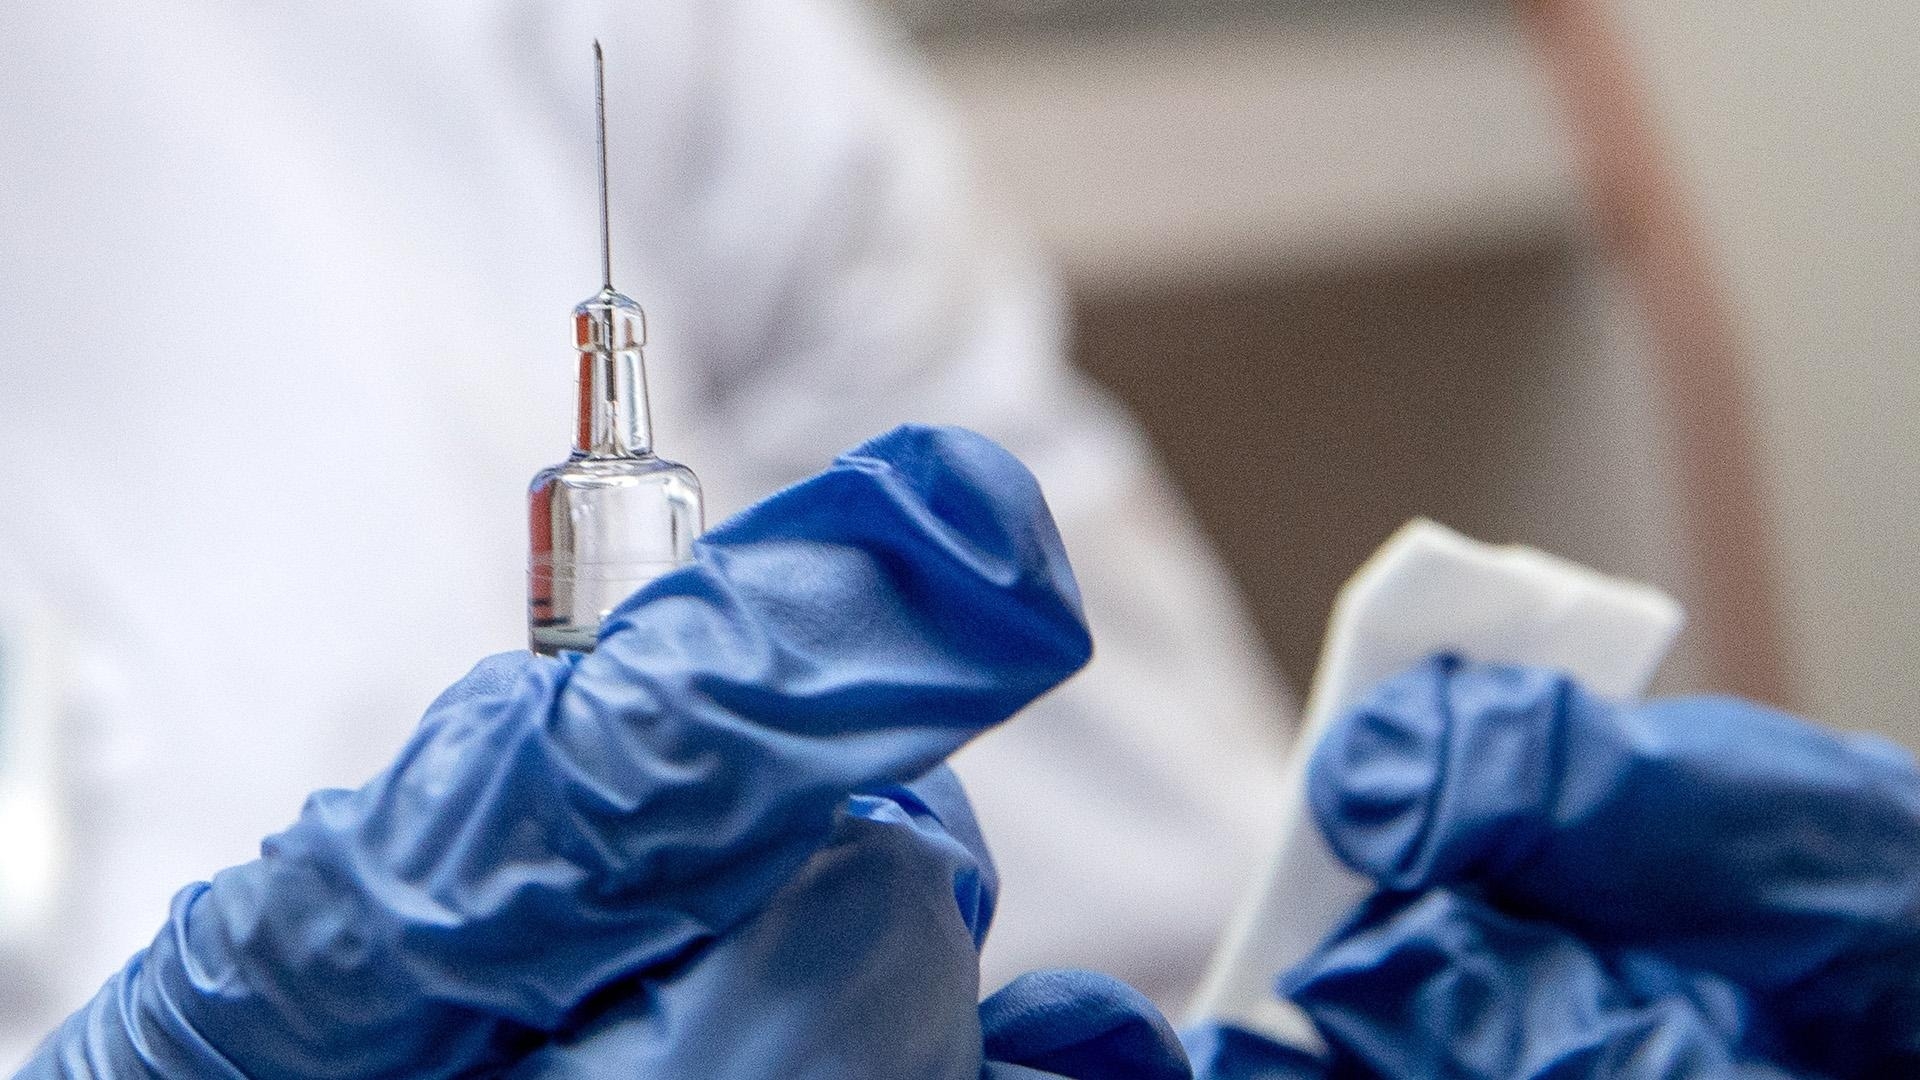 Российскую вакцину от коронавируса испытают на белорусах